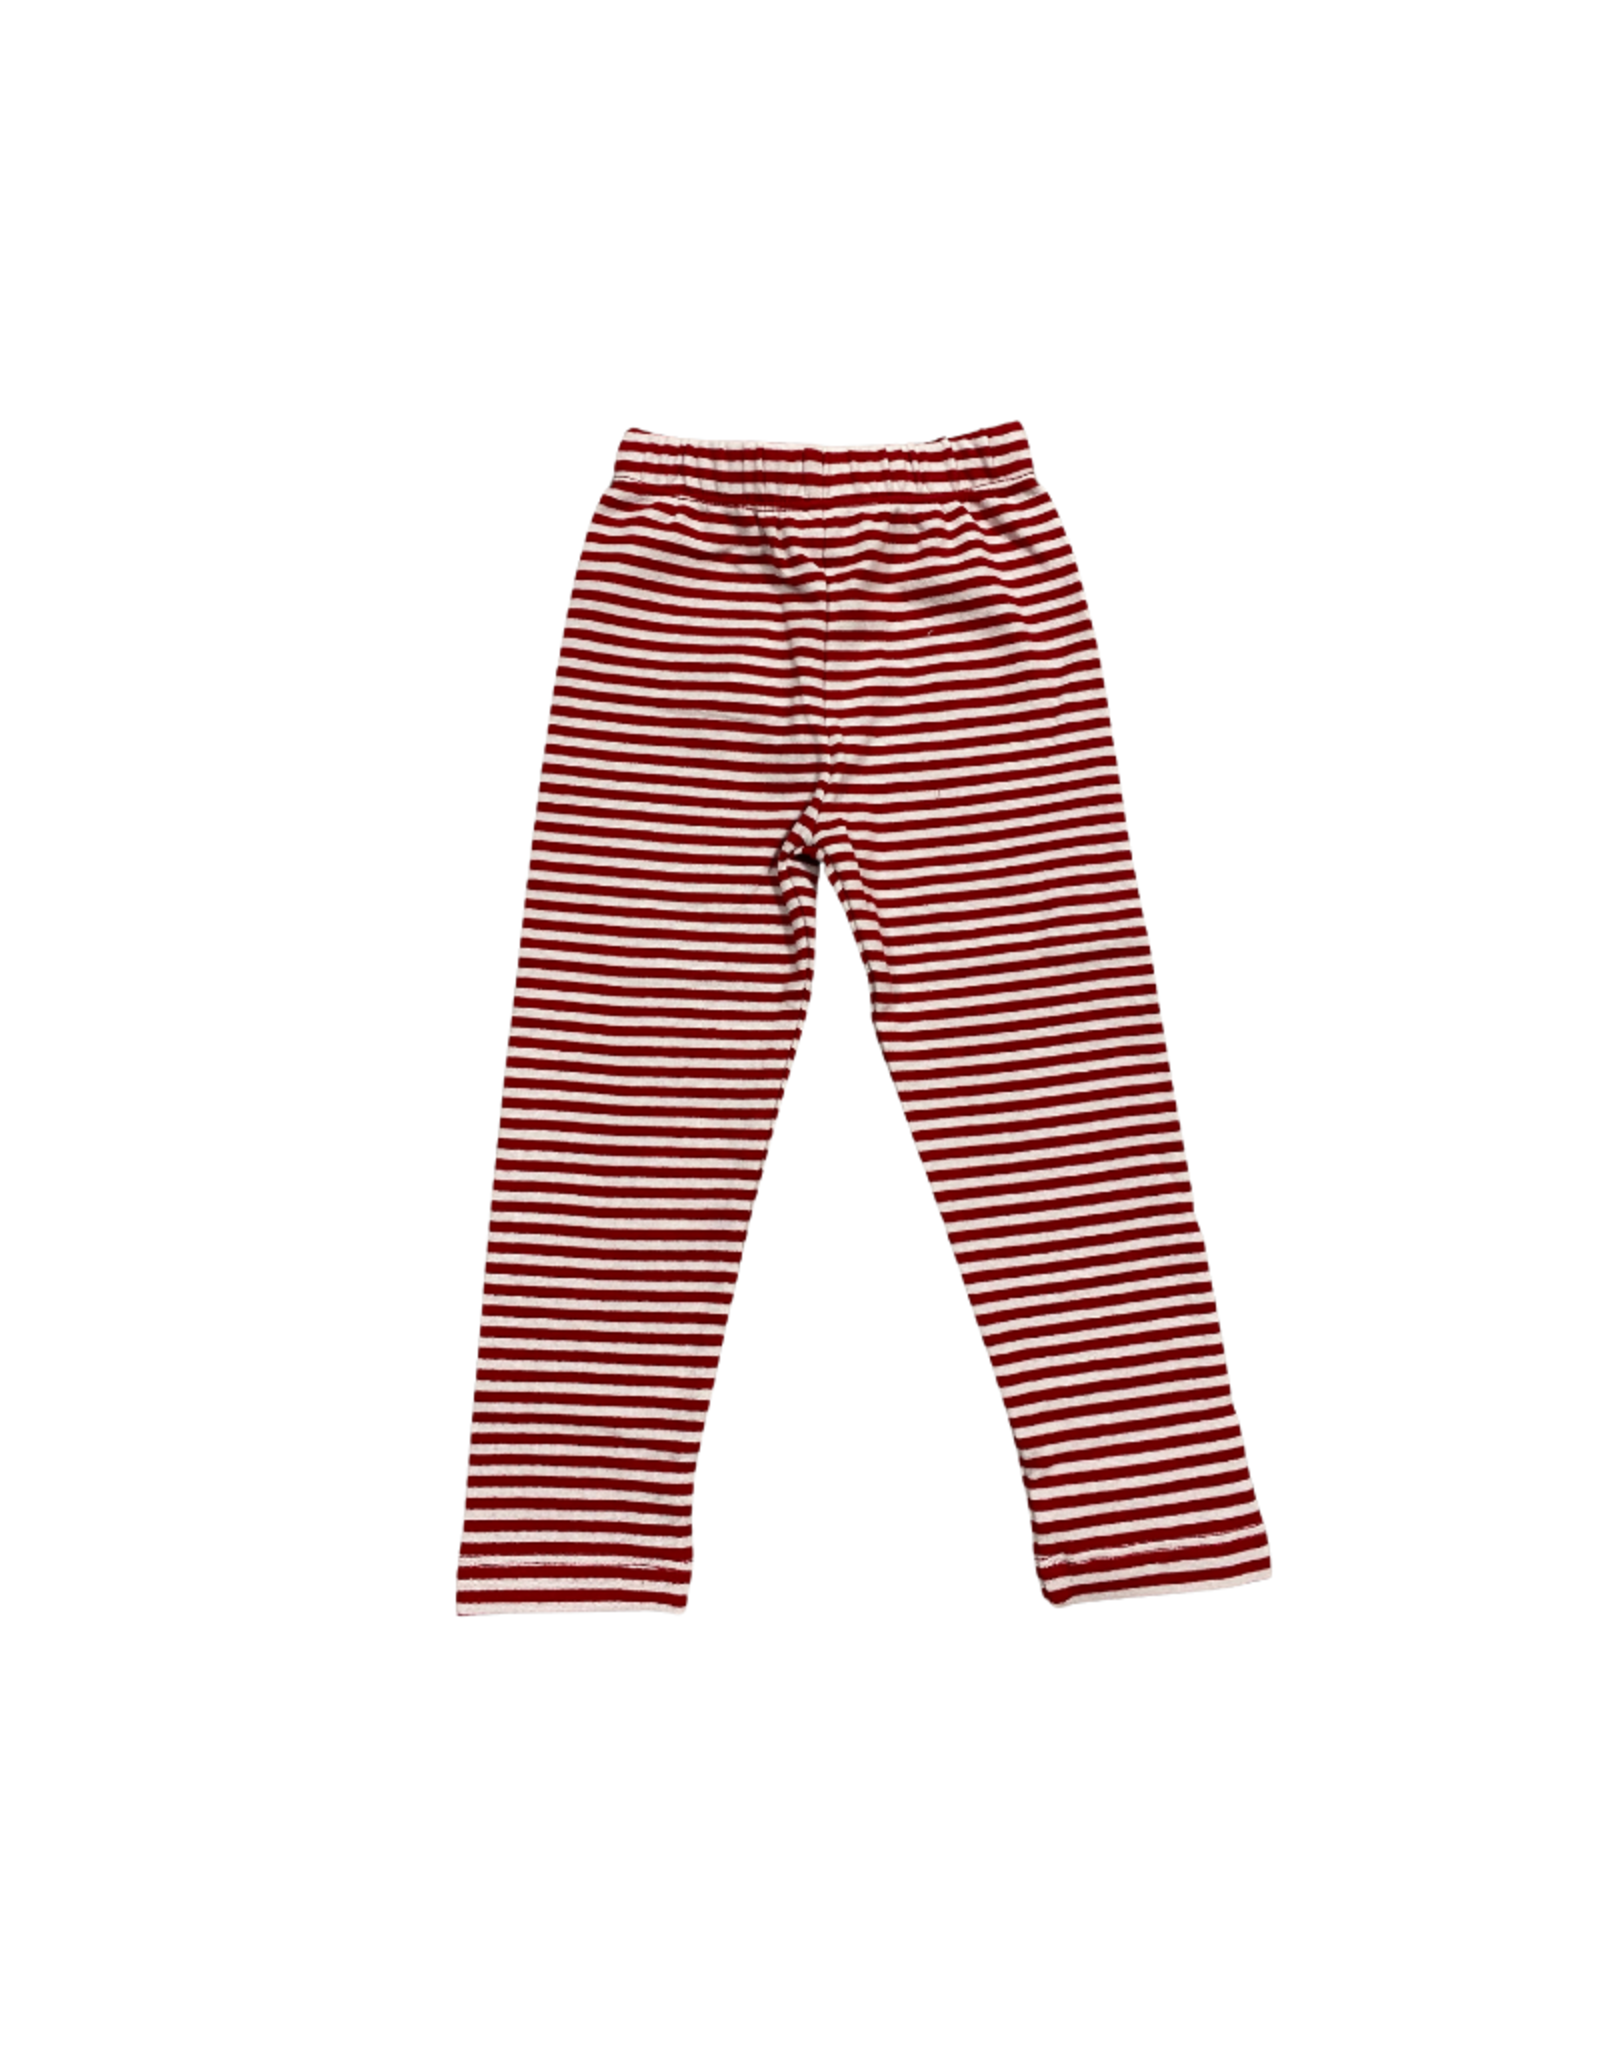 Luigi Straight Leggings Red and White Stripe